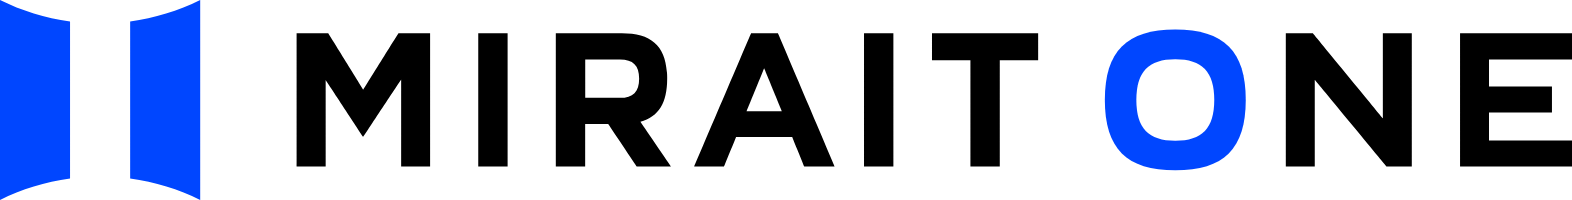 MIRAIT ONE Corporation logo large (transparent PNG)